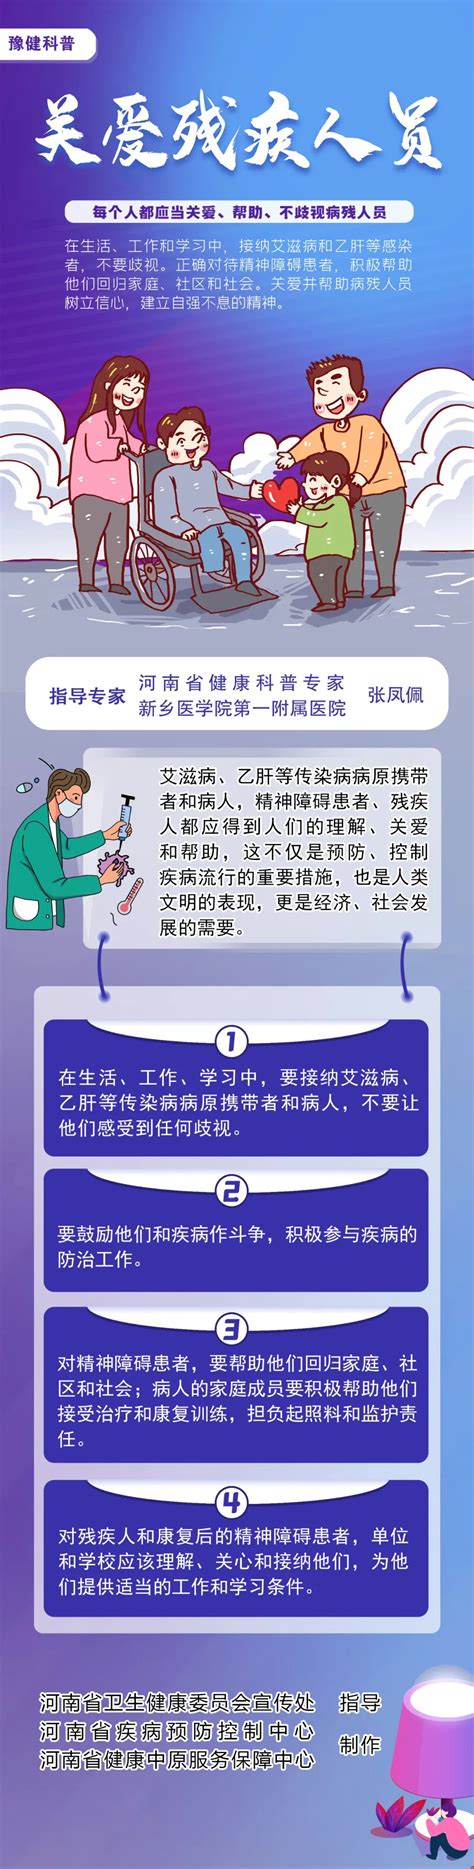 健康科普丨每个人都应当关爱、帮助、不歧视病残人员-安阳市第三人民医院